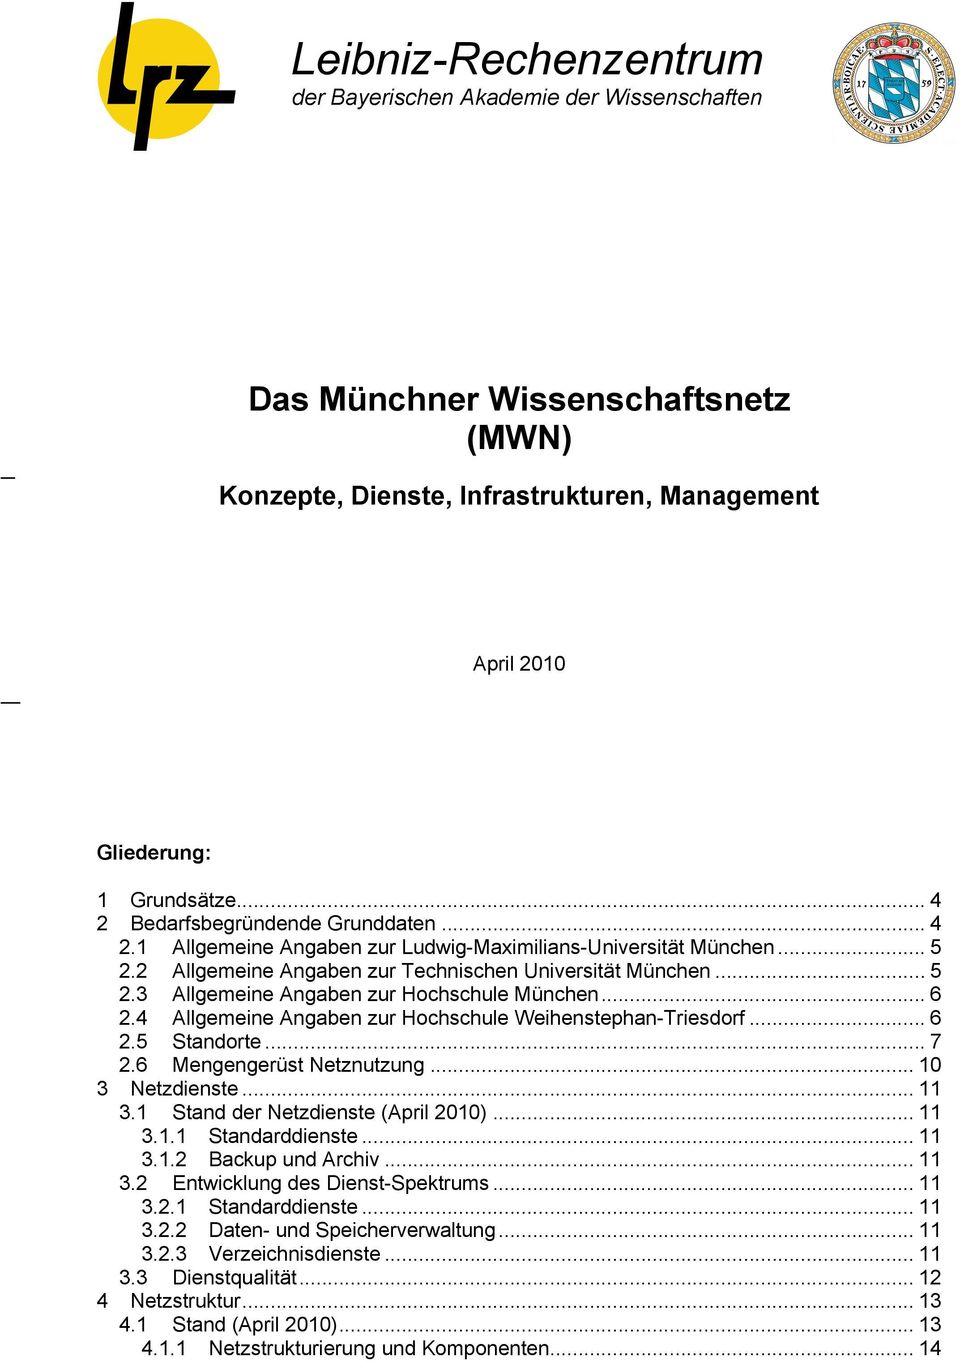 .. 6 2.4 Allgemeine Angaben zur Hochschule Weihenstephan-Triesdorf... 6 2.5 Standorte... 7 2.6 Mengengerüst Netznutzung... 10 3 Netzdienste... 11 3.1 Stand der Netzdienste (April 2010)... 11 3.1.1 Standarddienste.